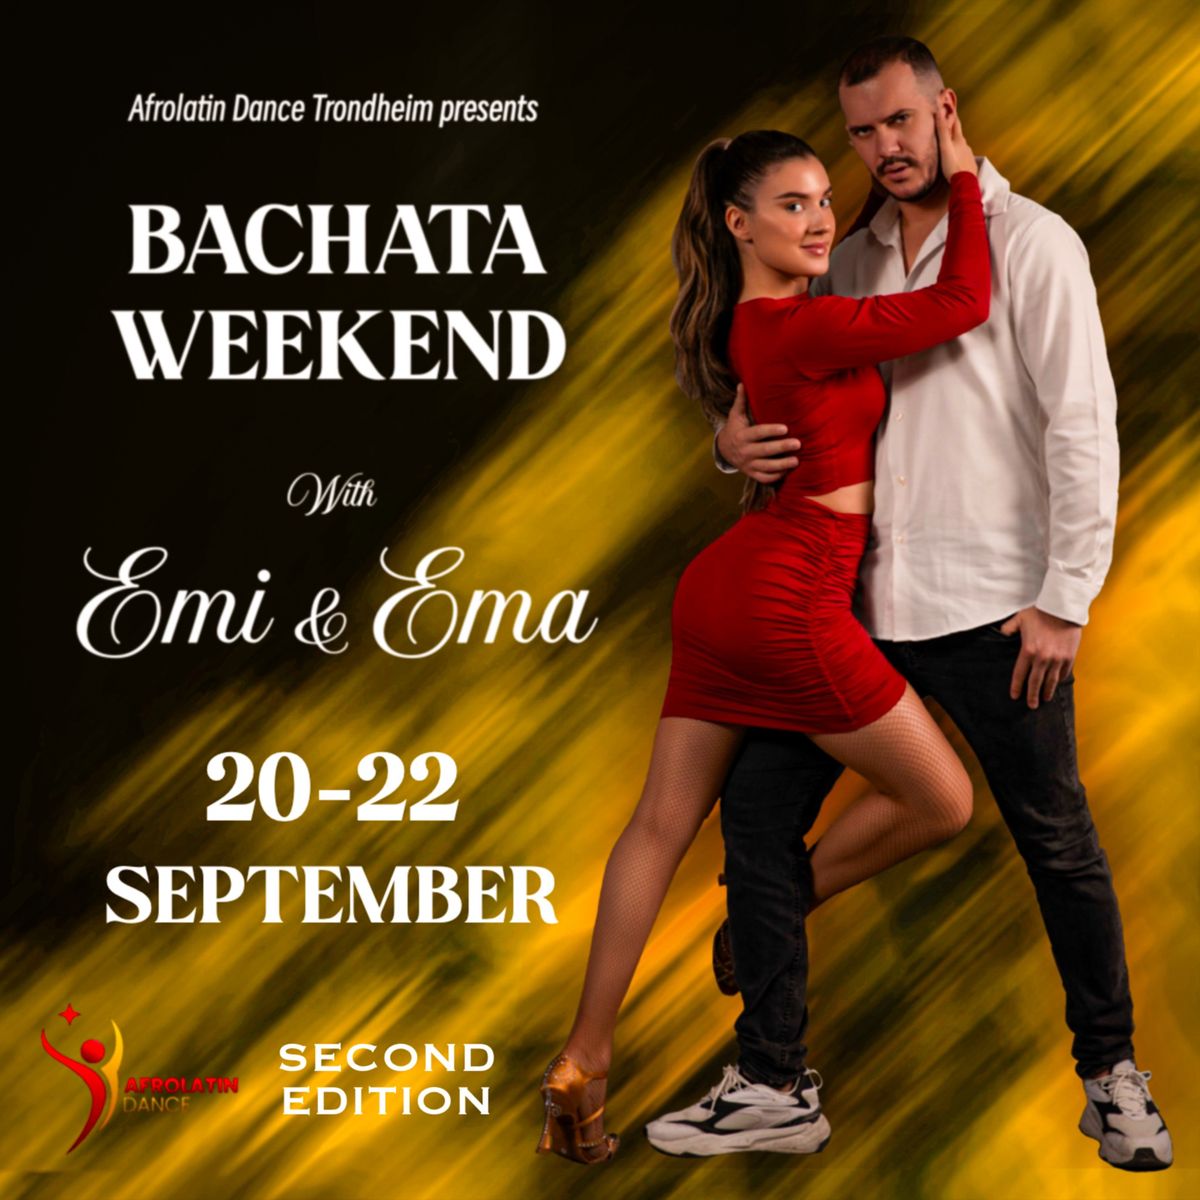 Bachata weekend with Emi & Ema \u2728